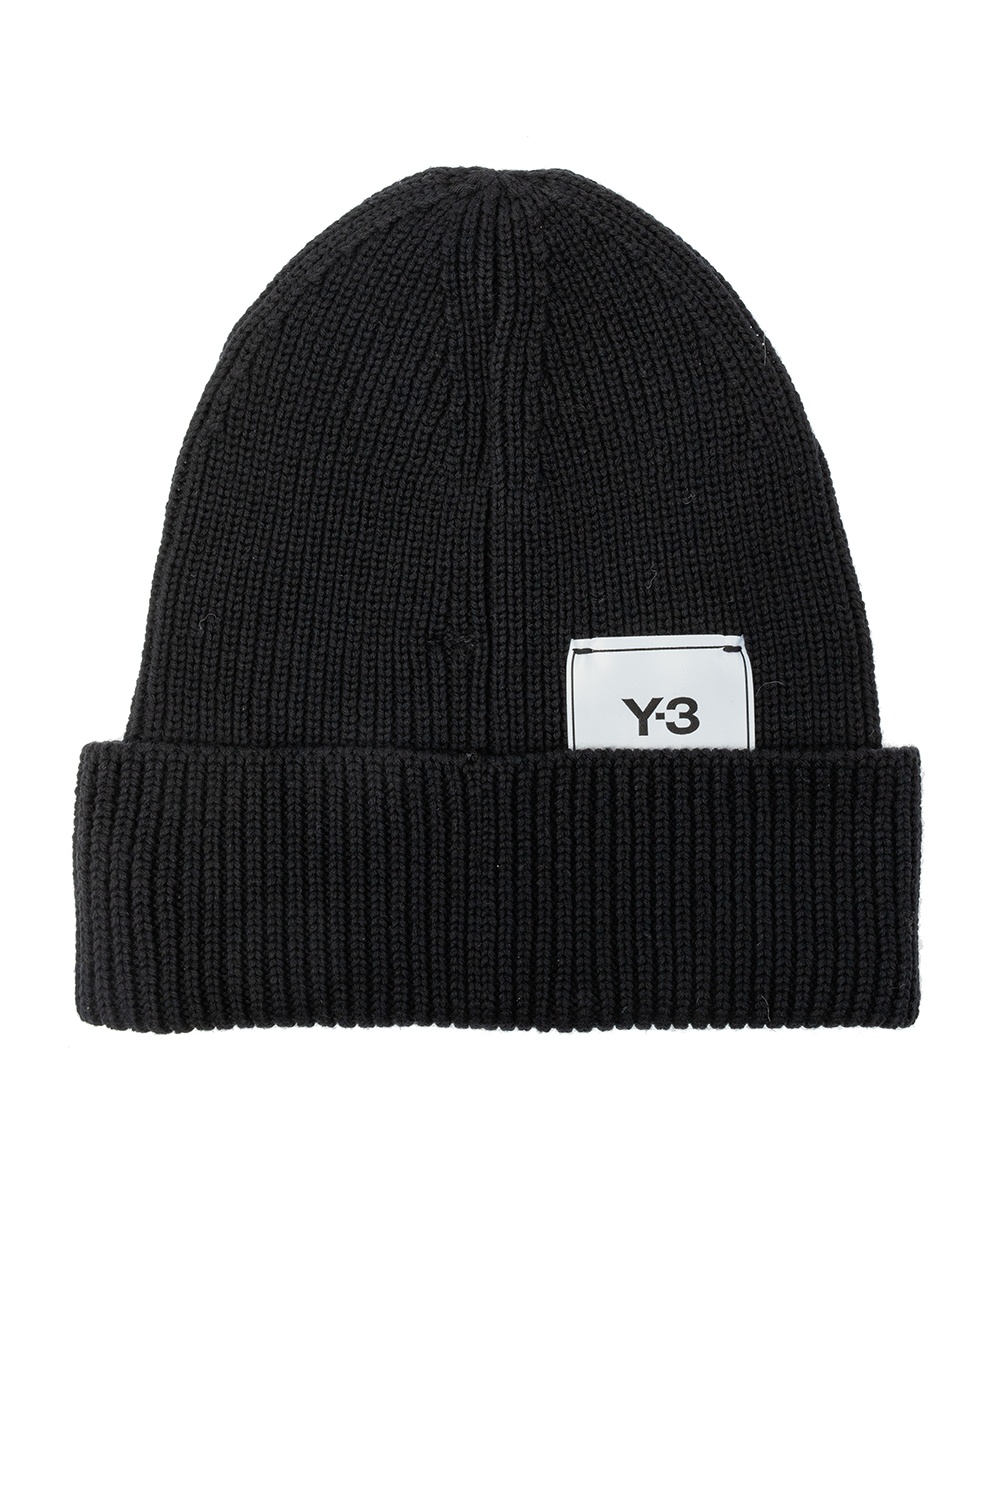 黑色品牌帽Y-3 Yohji Yamamoto - Vitkac 中国